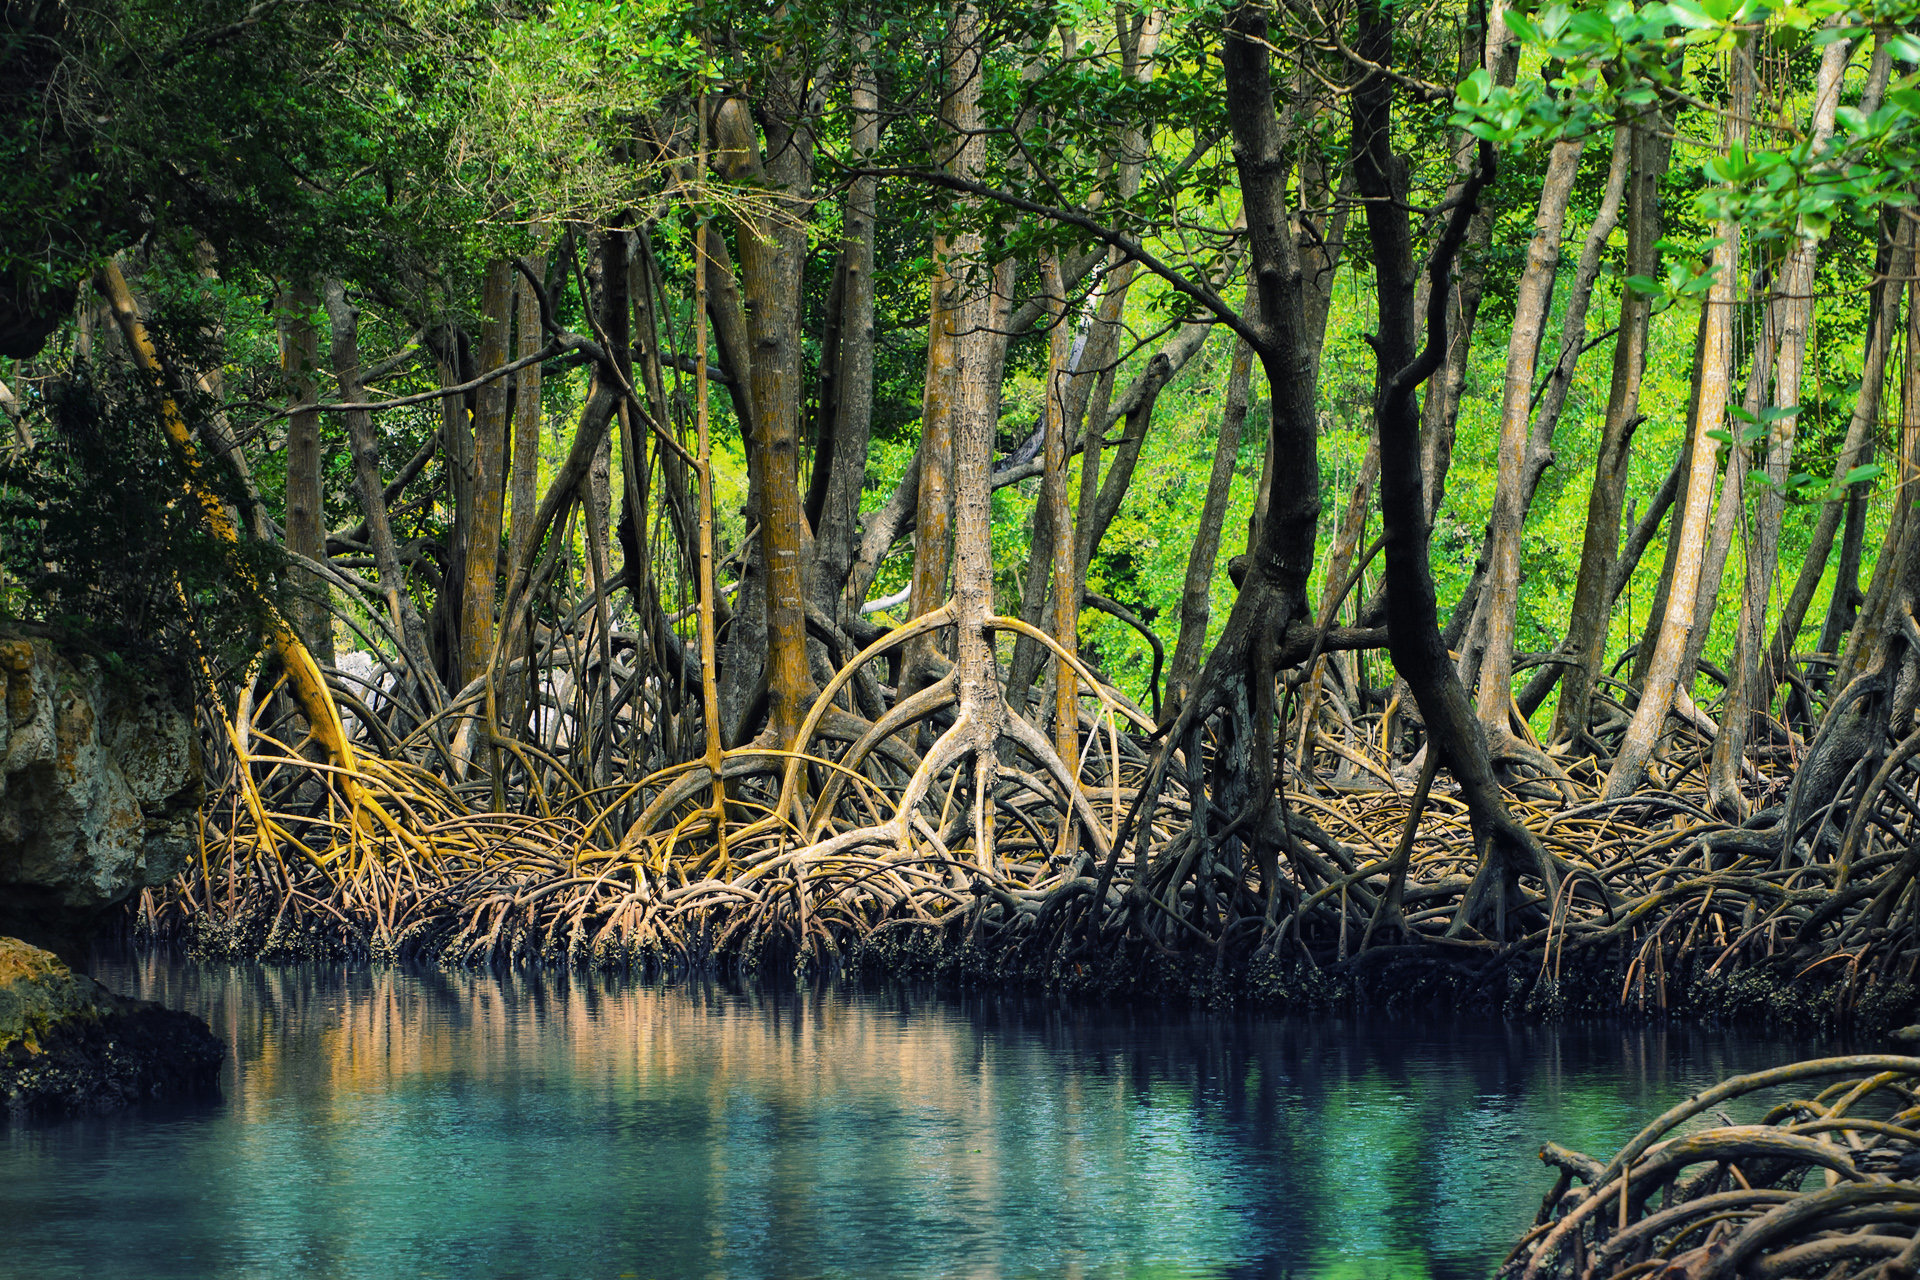 Hasil gambar untuk hutan bakau